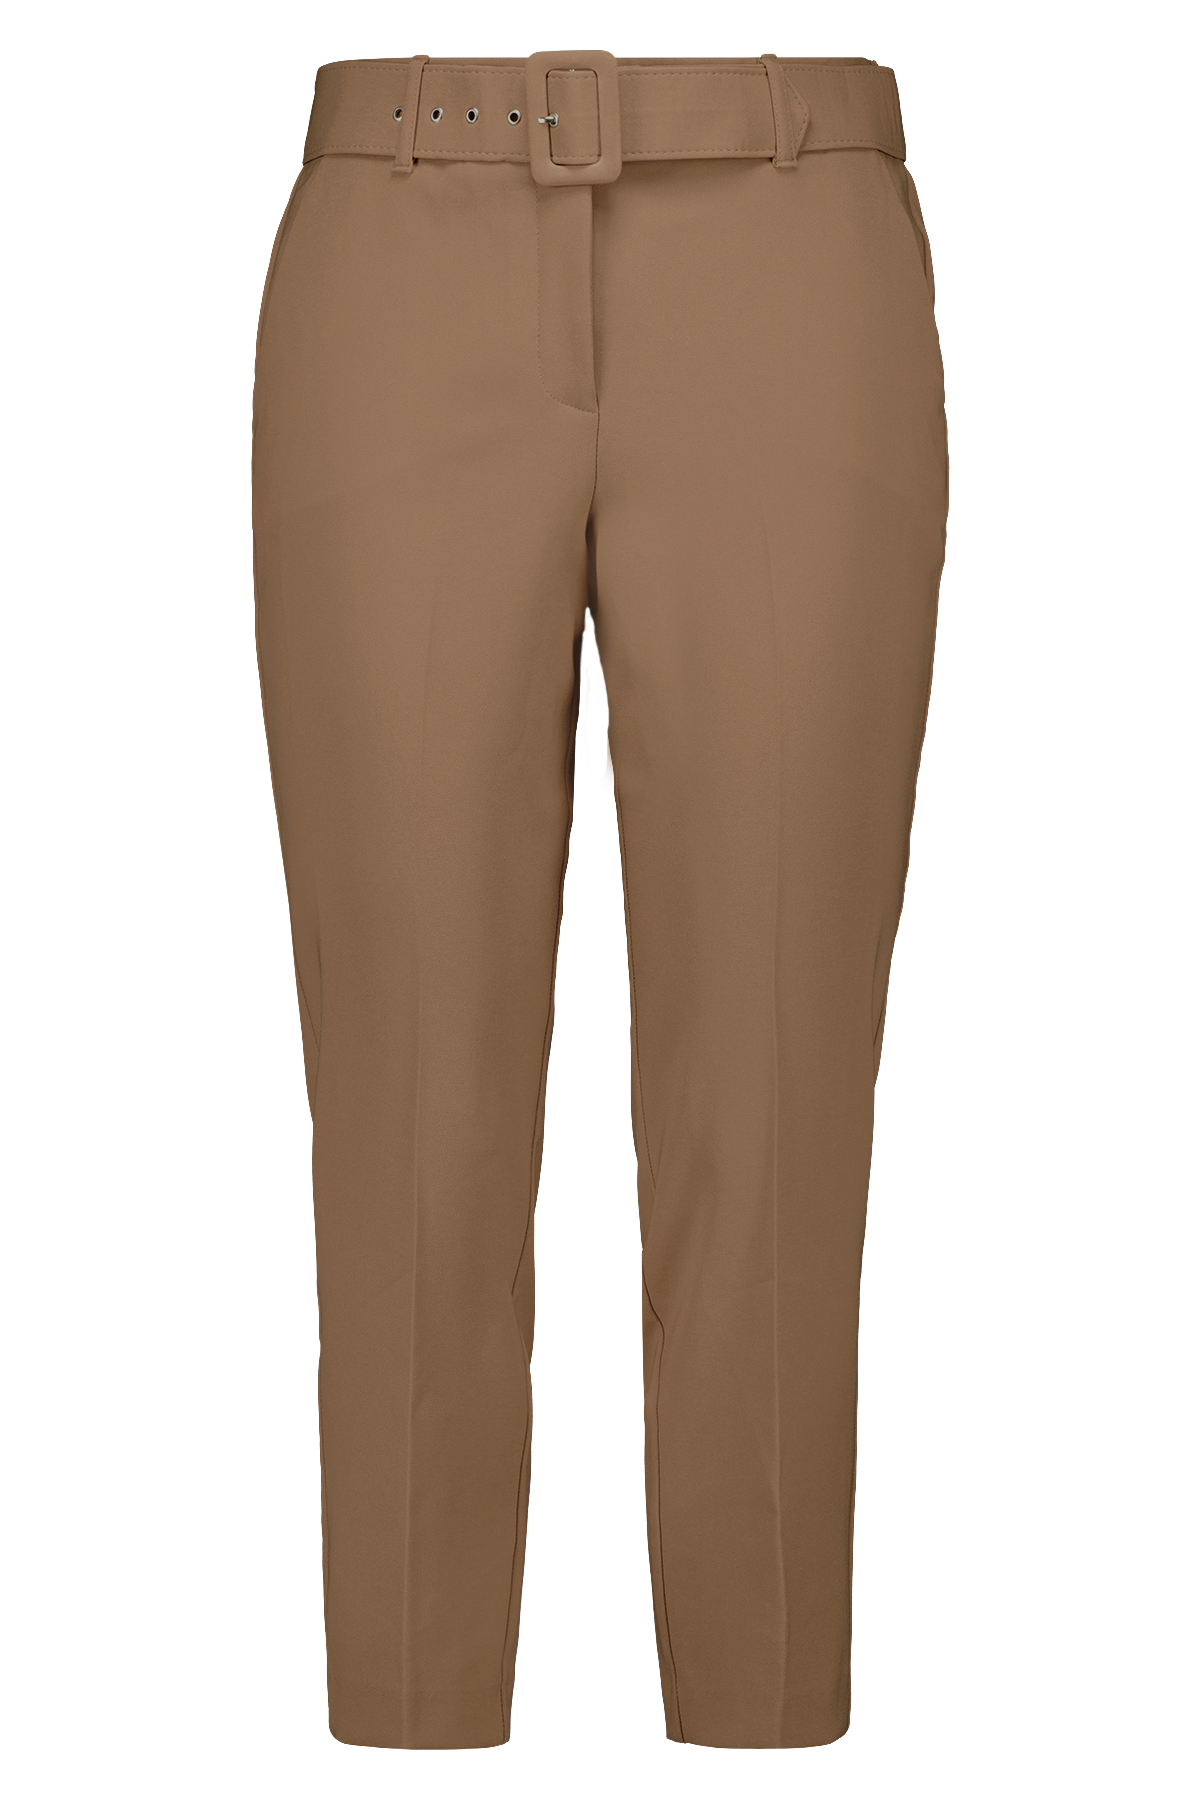 Pantalones con cinto image 1